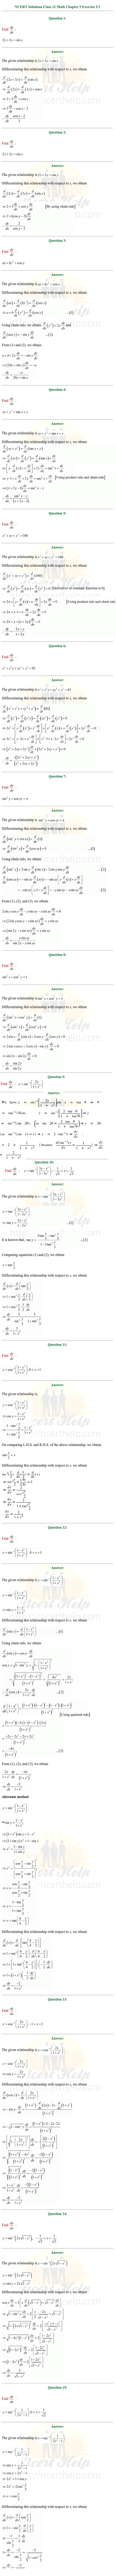 ex.5.3 Class 12 Math Chapter 5 ncert solutions